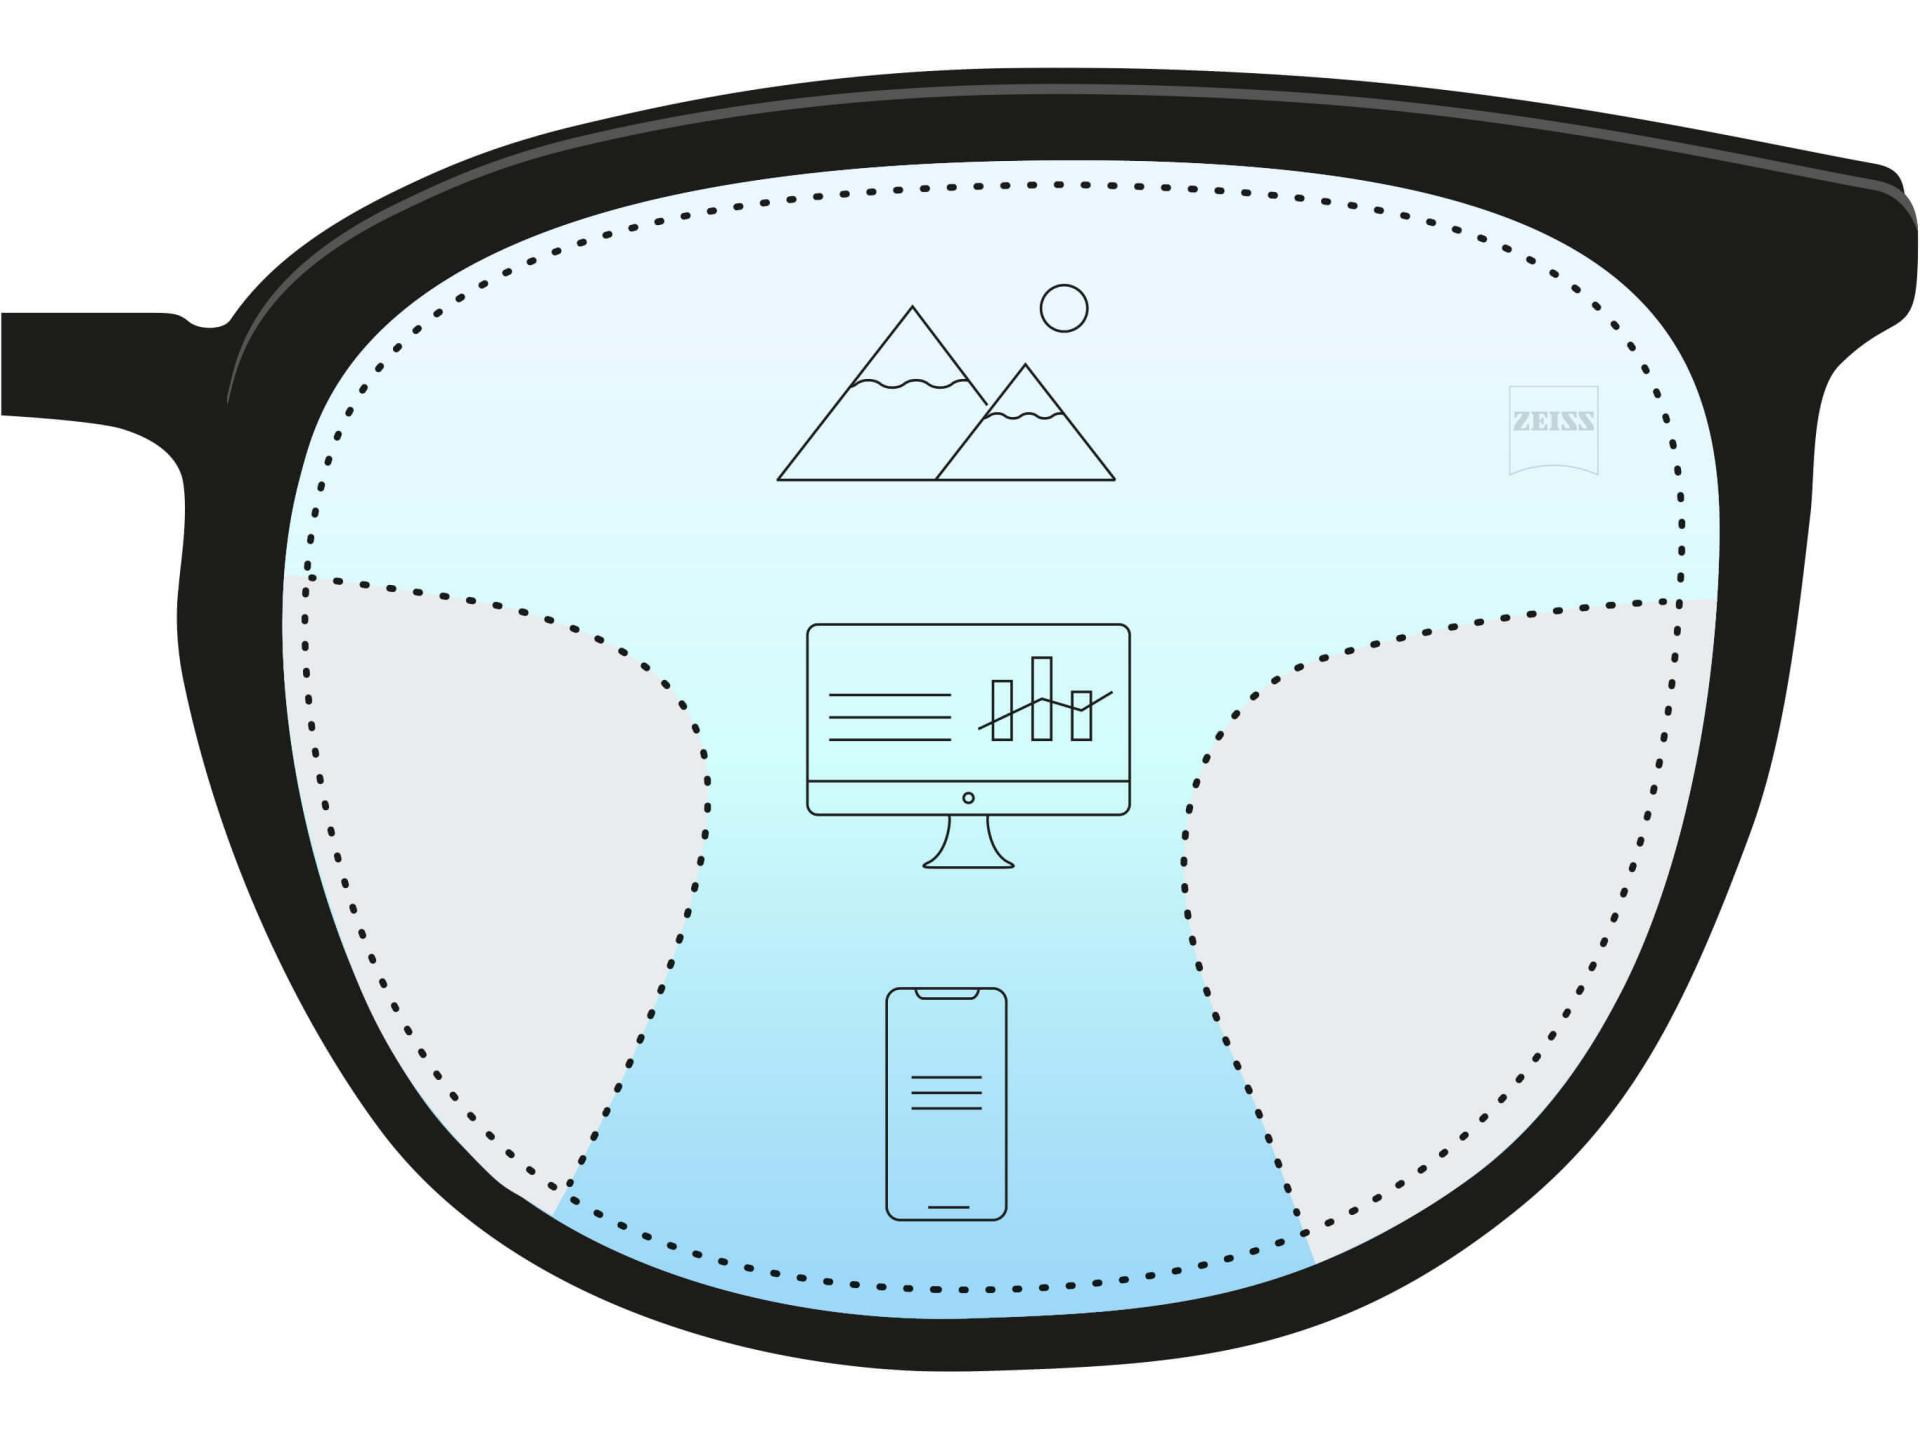 En illustrasjon av et progressivt glass som viser tre forskjellige soner. Tre ikoner og fargegradient indikerer tre styrker for forskjellige avstander - nær, middels og fjernt.